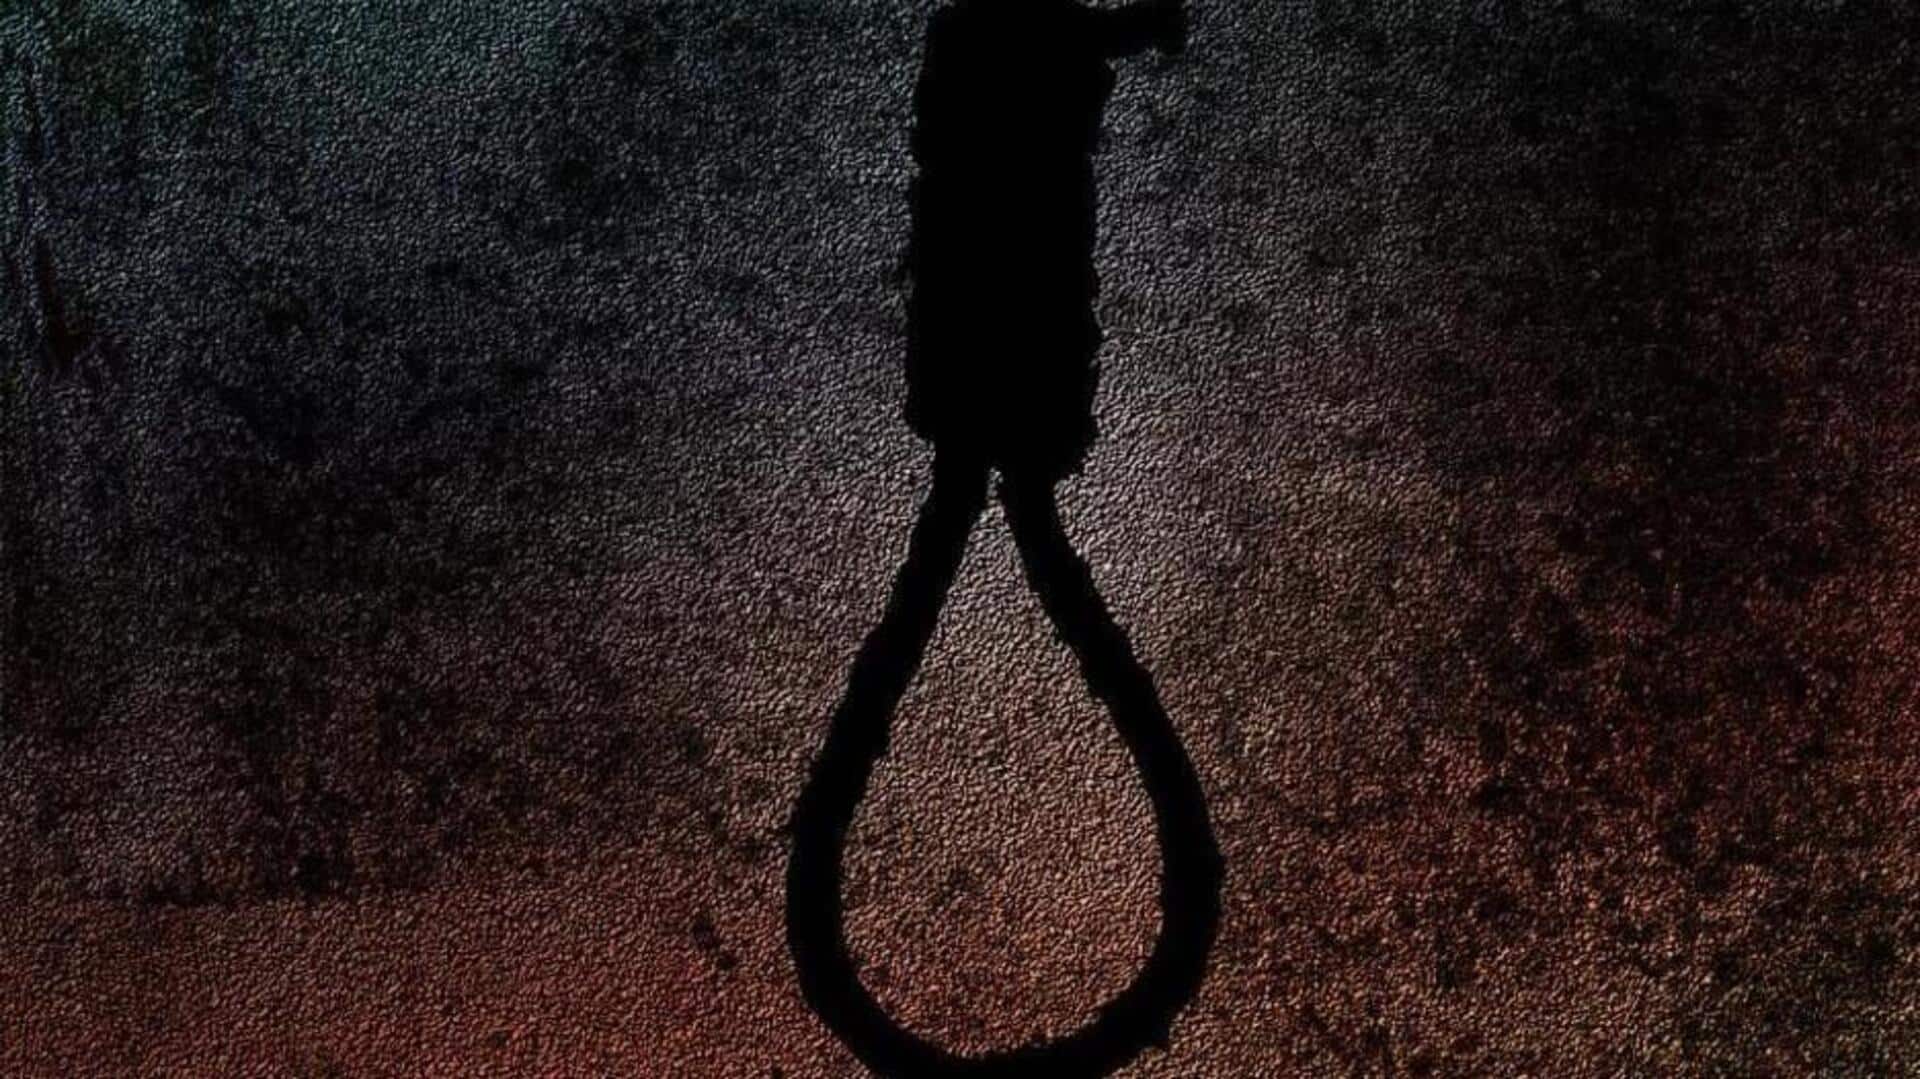 राजस्थान: कोटा में NEET की तैयारी कर रही 19 वर्षीय छात्रा ने फांसी लगाकर आत्महत्या की